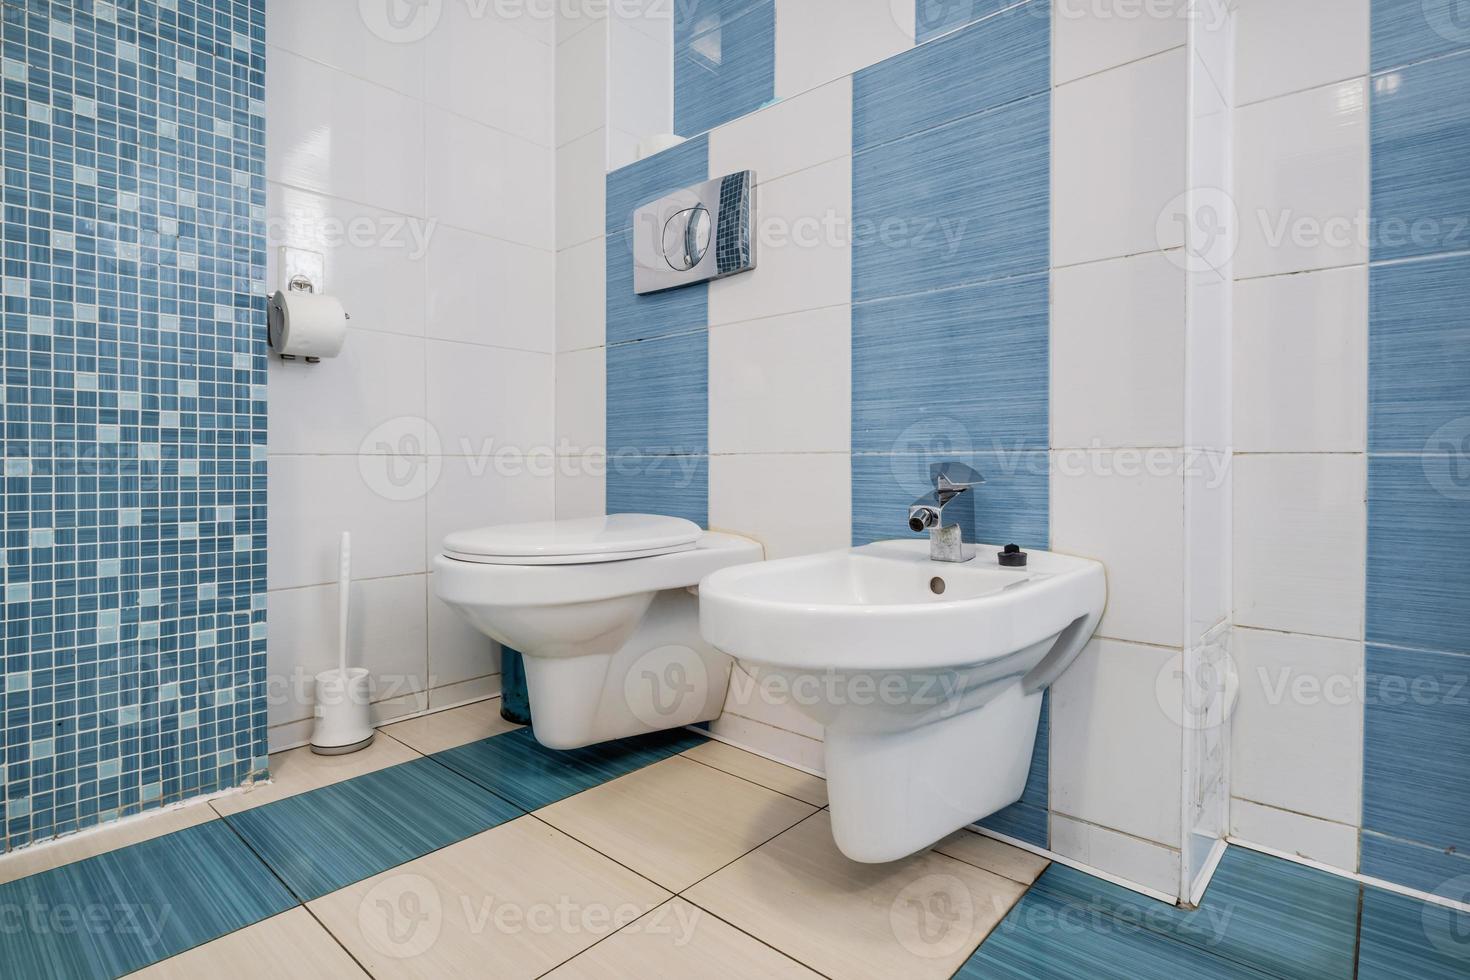 toalett skål och Övrig möbel i toalett toalett foto